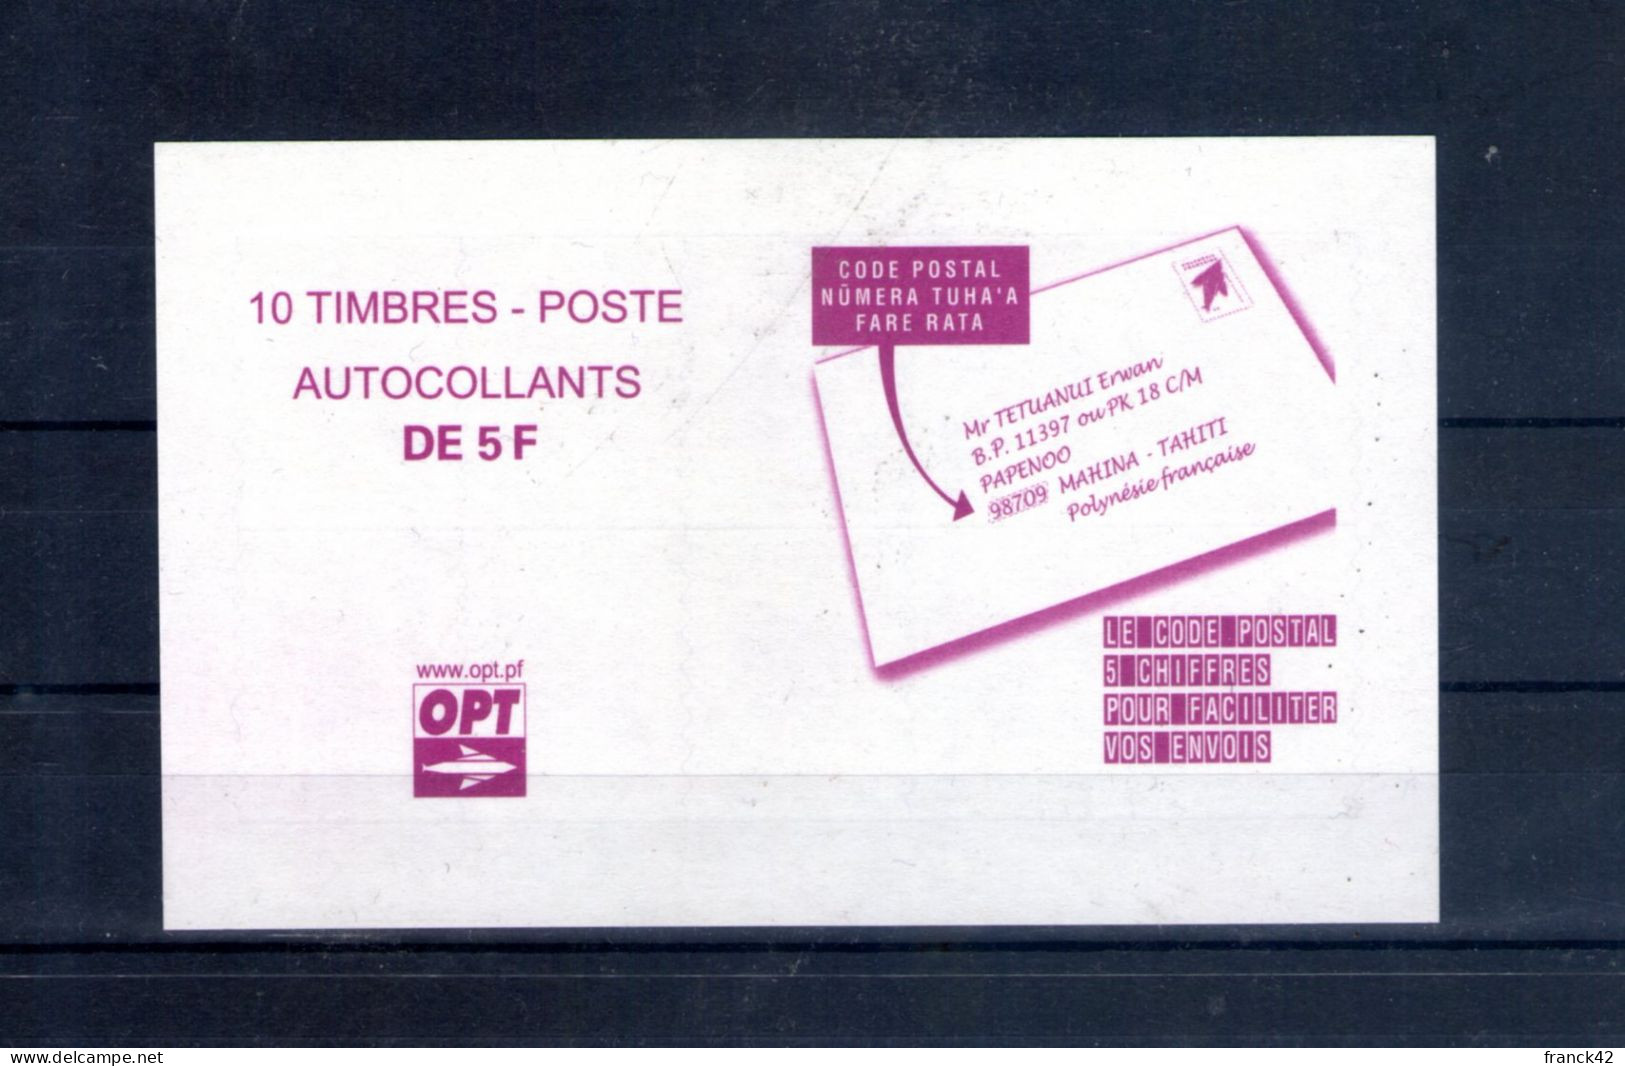 Polynésie Française. Emblème Postal. Carnet Autoadhésif. 2012 - Neufs